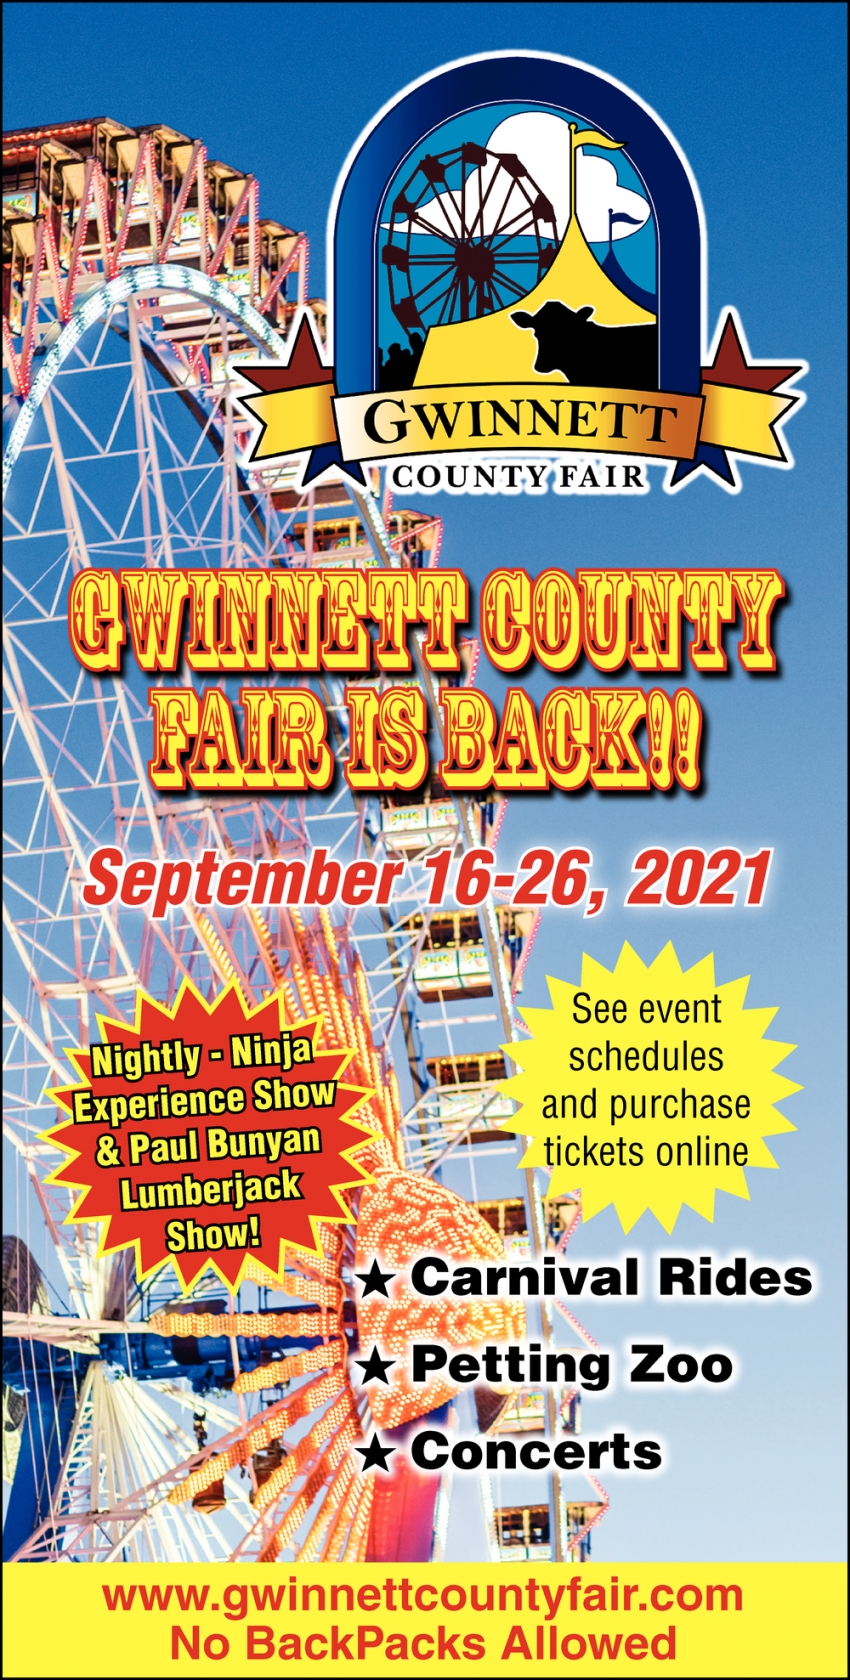 Gwinnett County Fair Is Back!